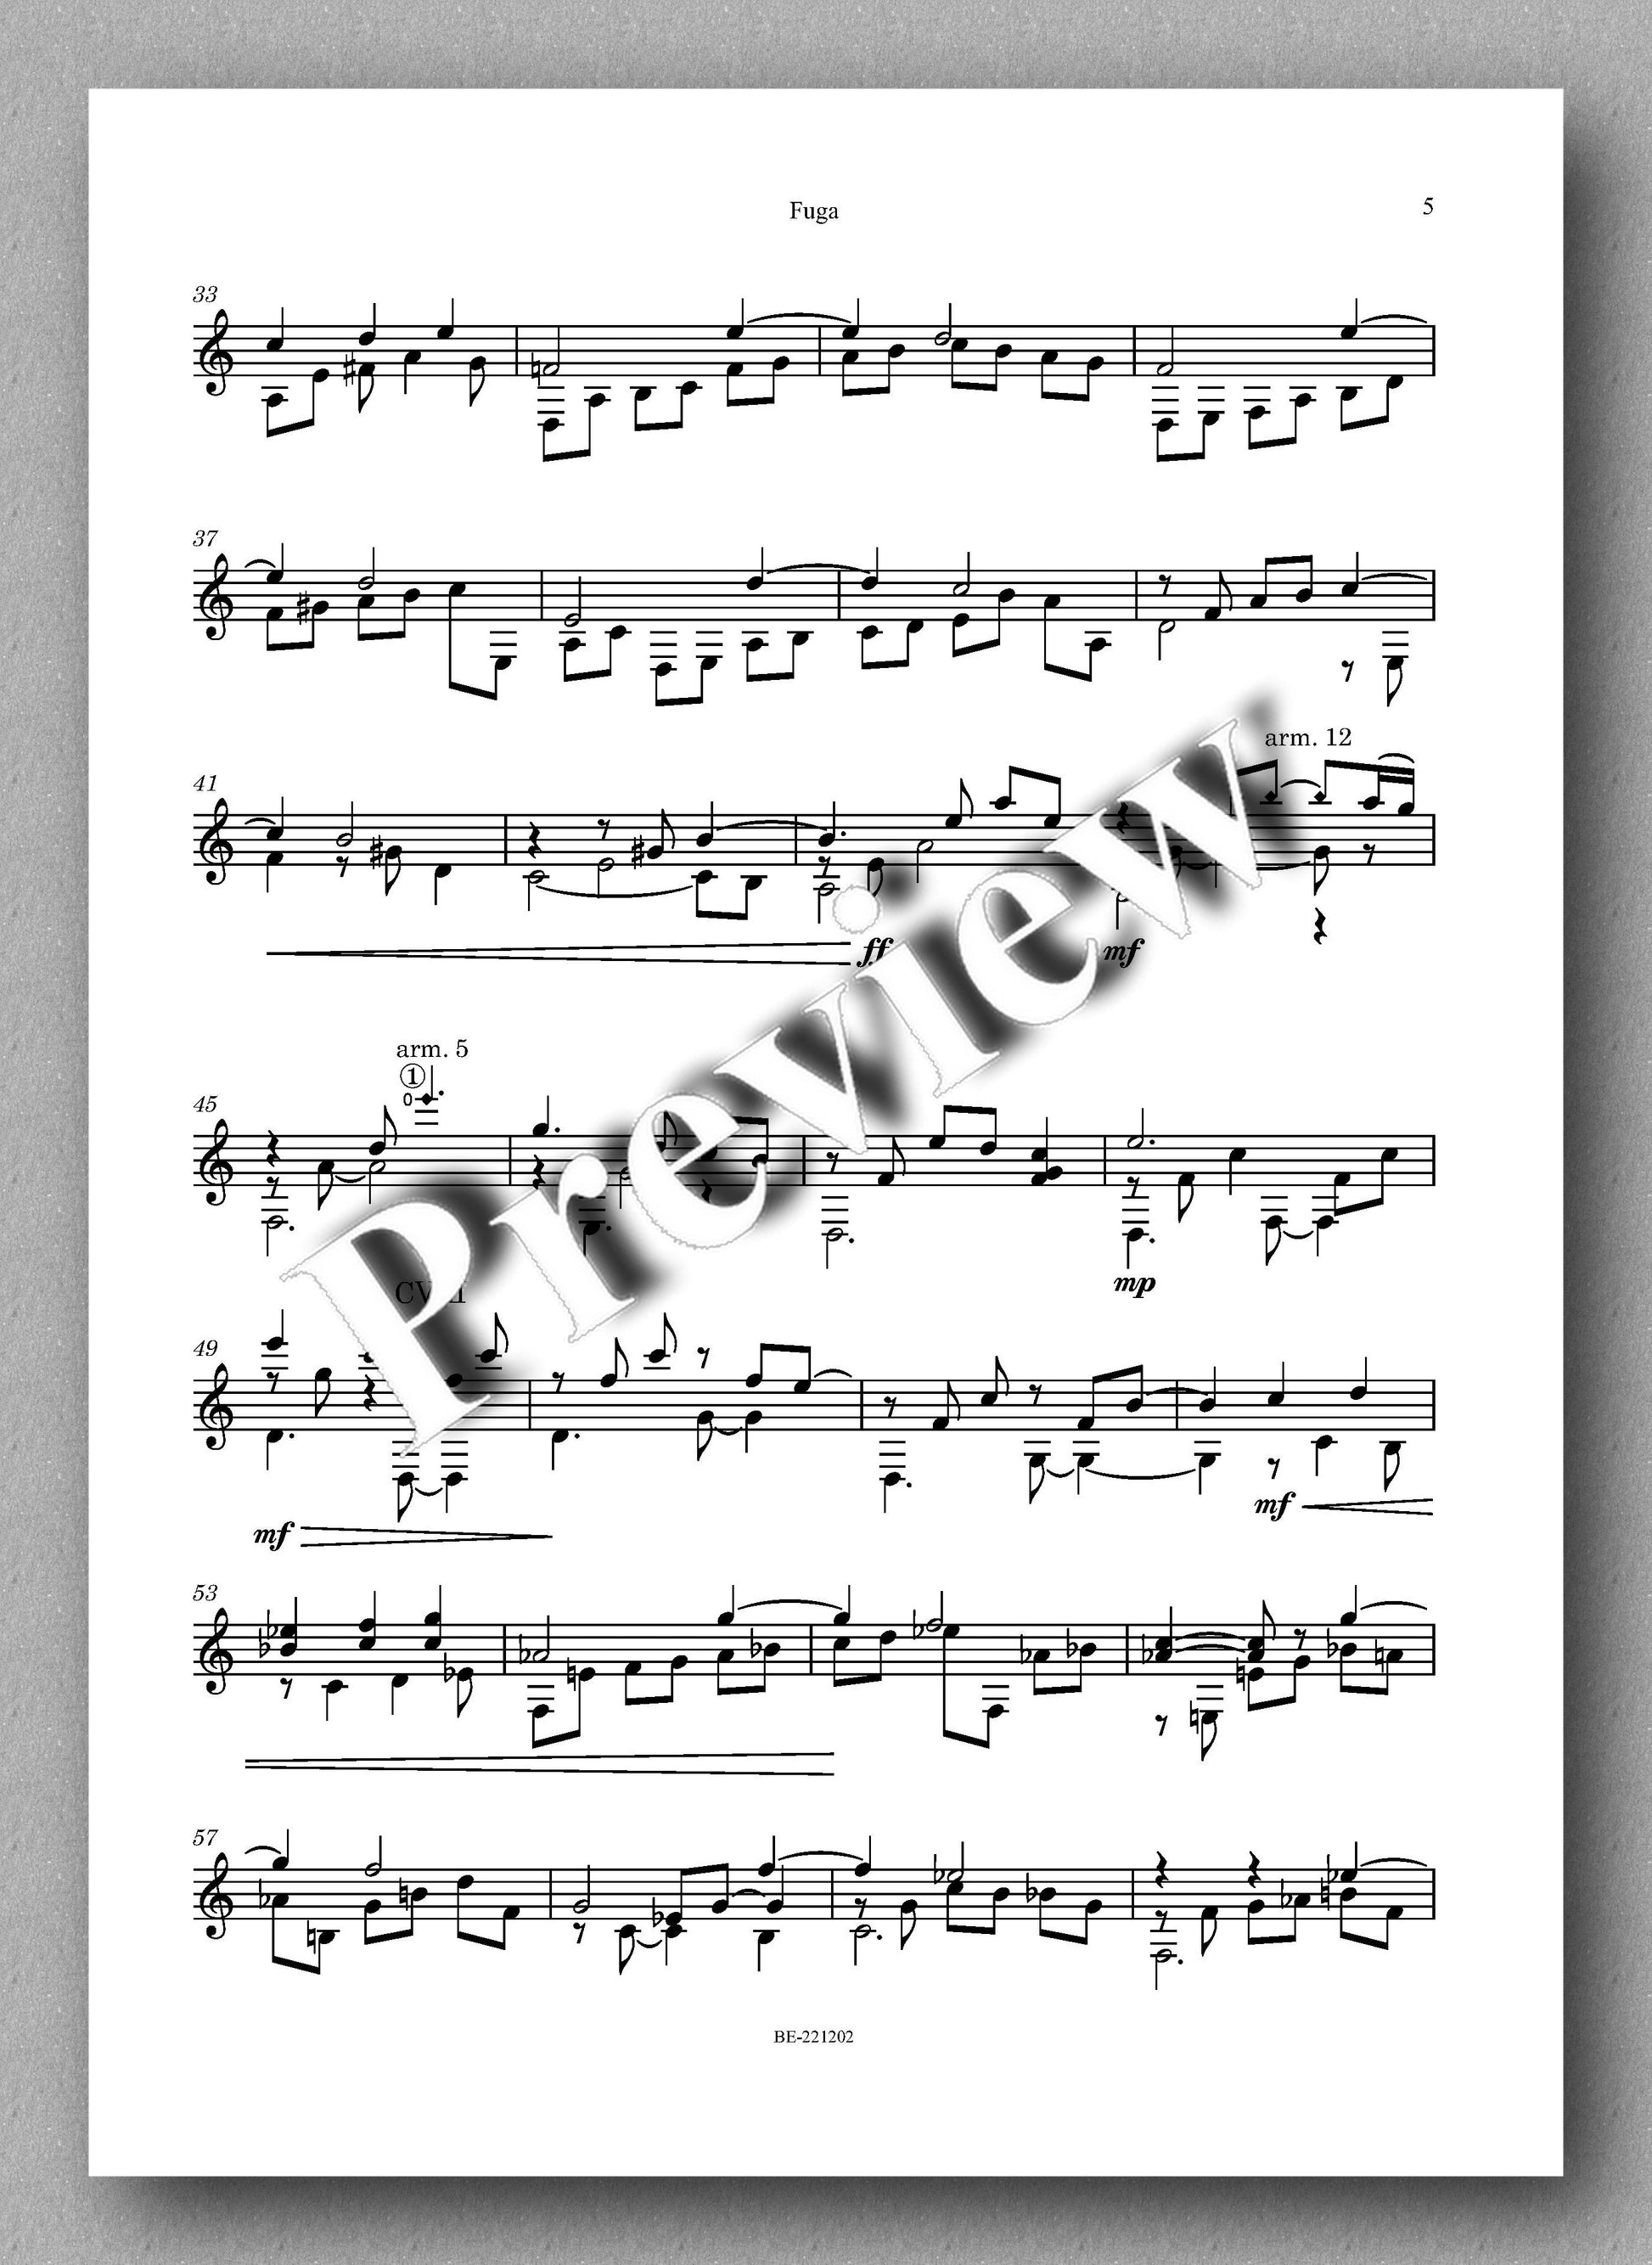 Juan Erena, Fugasobre un tema de Bill Evans - preview of the music score 2